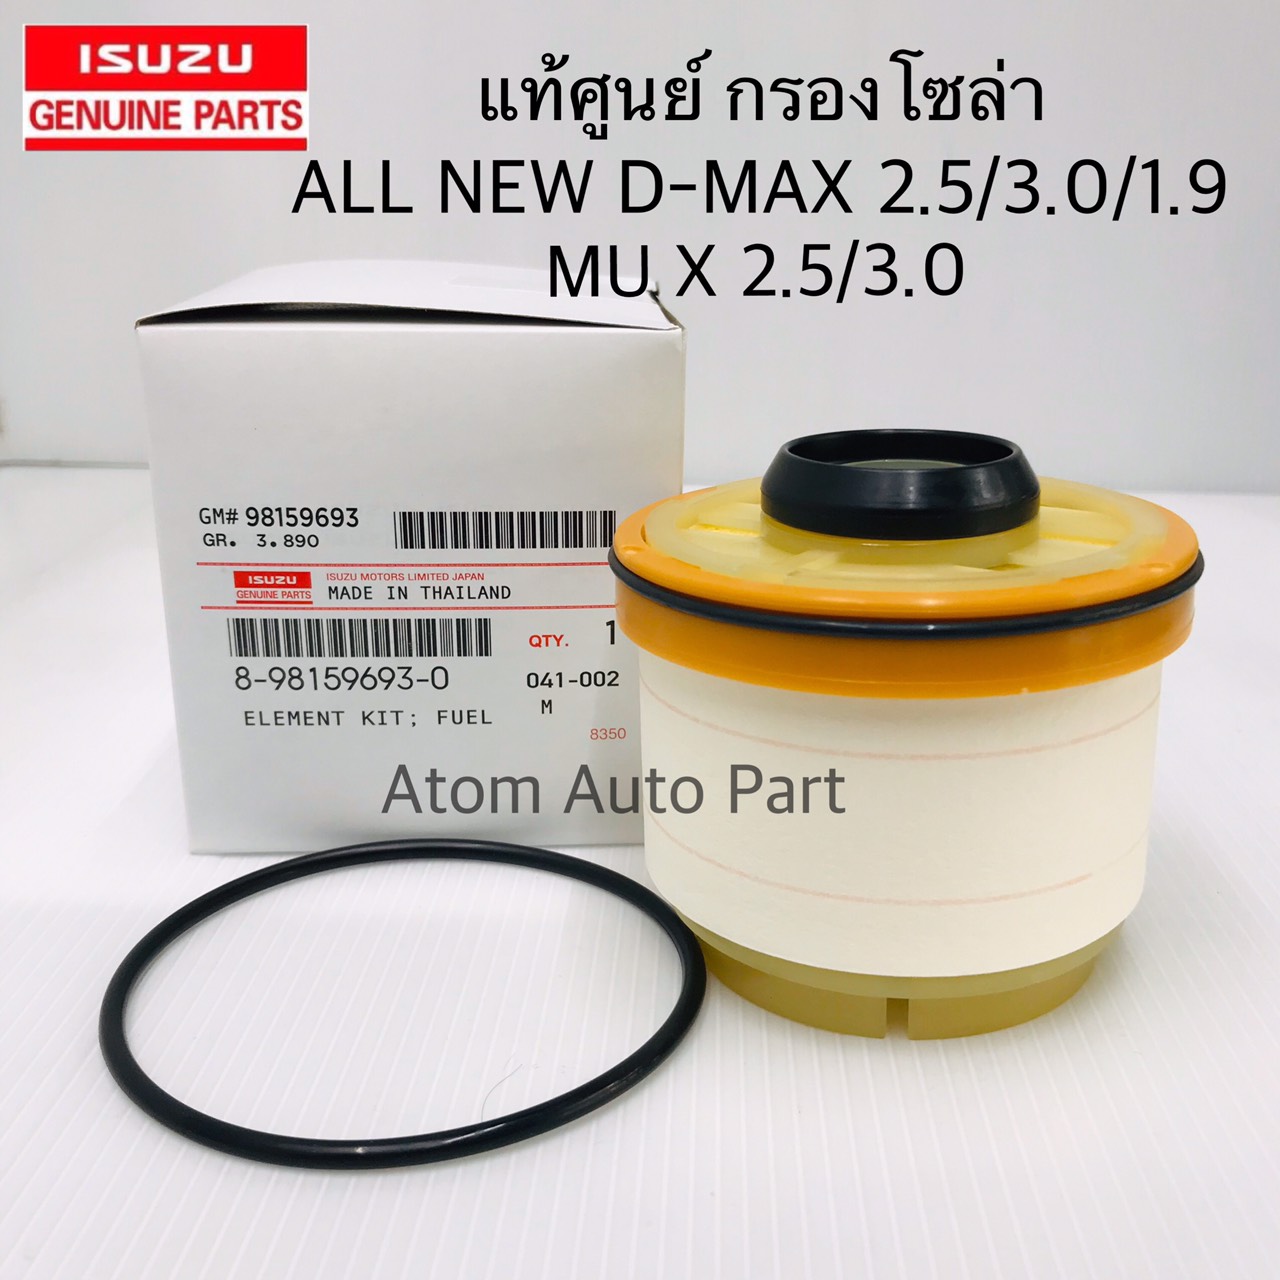 แท้เบิกศูนย์ ISUZU กรองโซล่า ALL NEW D-MAX 2.5/3.0/1.9Blue Power,MU X  ปี2012-2019 รหัสแท้.8-98159693-0 (กรองน้ำมันเชื้อเพลิง)